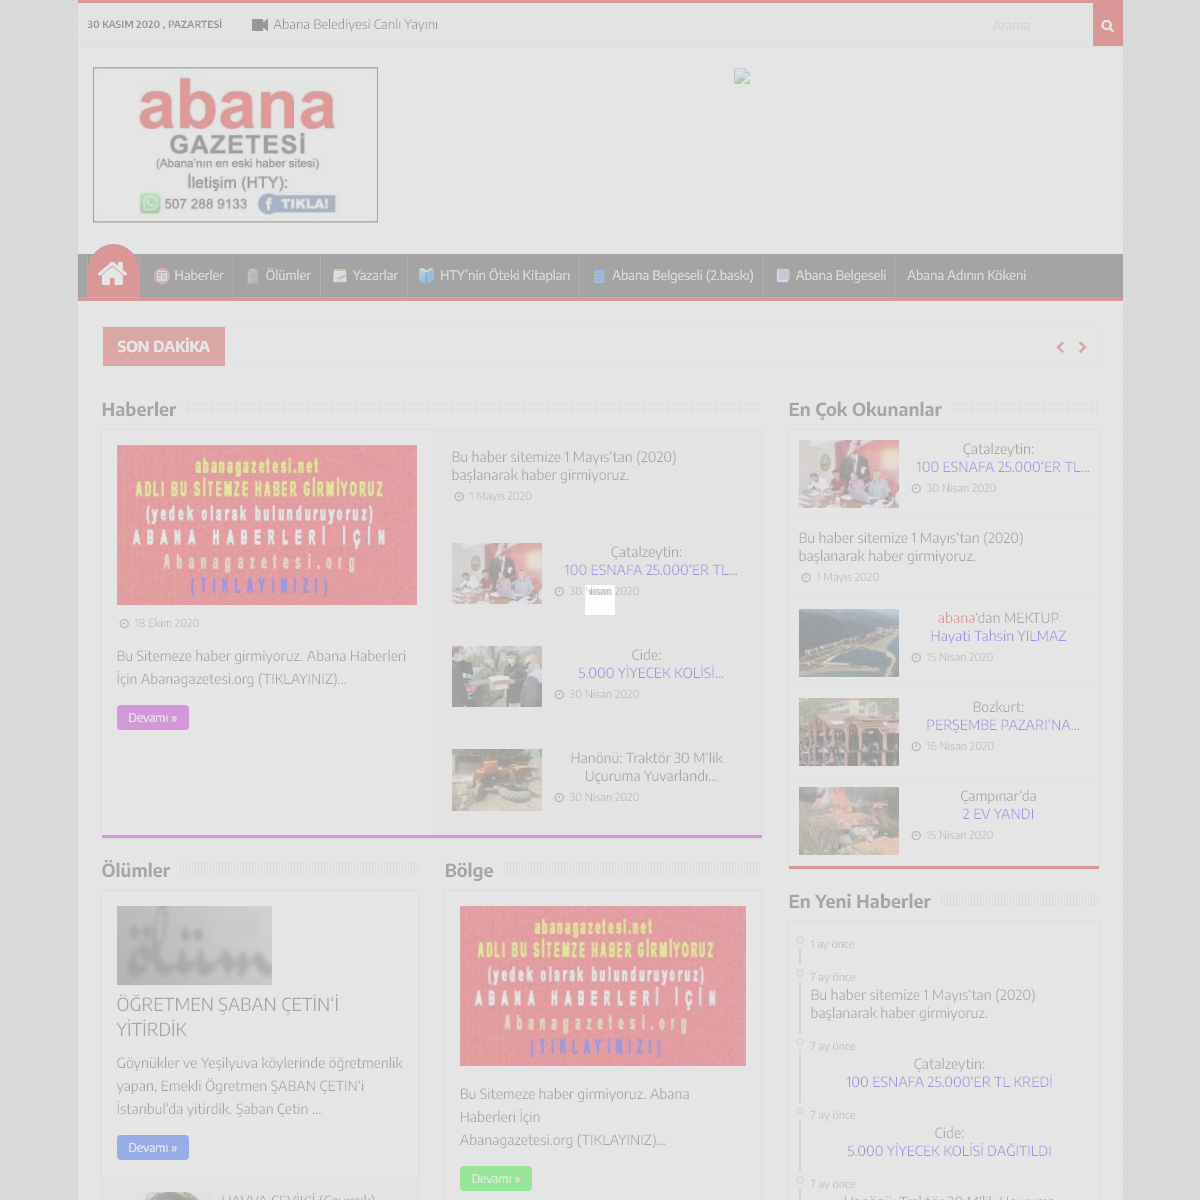 A complete backup of abana.com